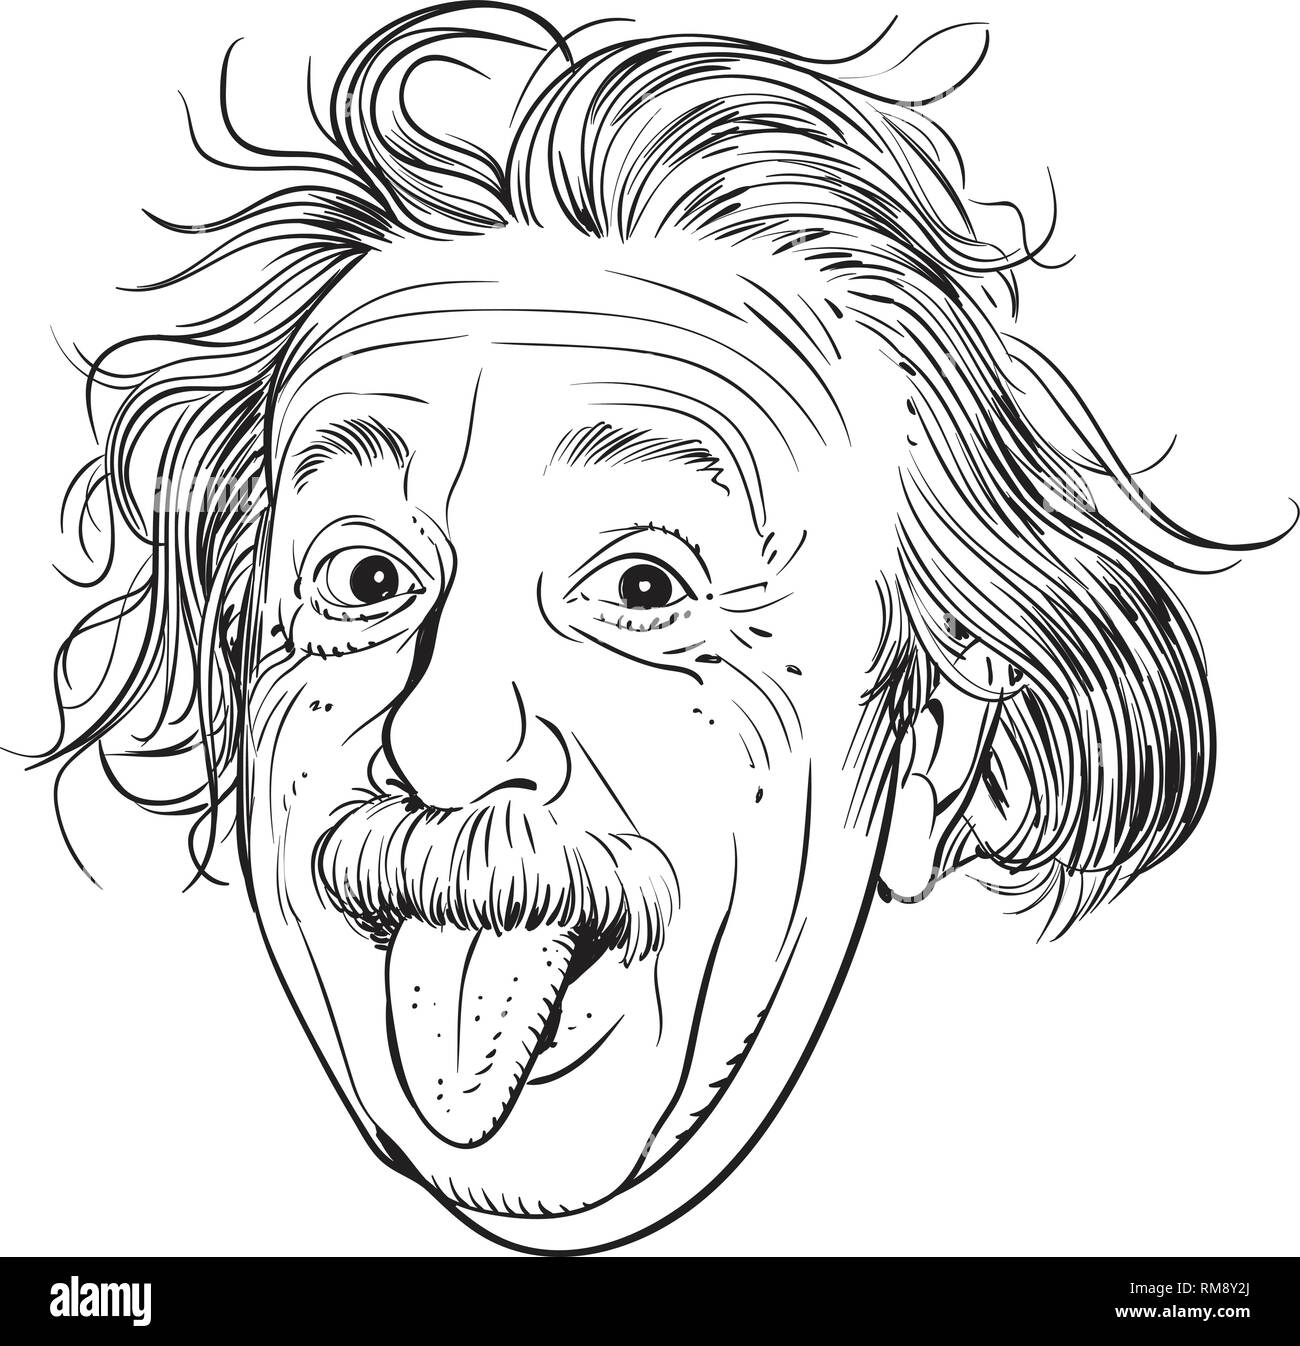 Albert Einstein ritratto in linea tecnica illustrazione. Egli era un tedesco-nato fisico teorico che hanno sviluppato la teoria della relatività. Illustrazione Vettoriale